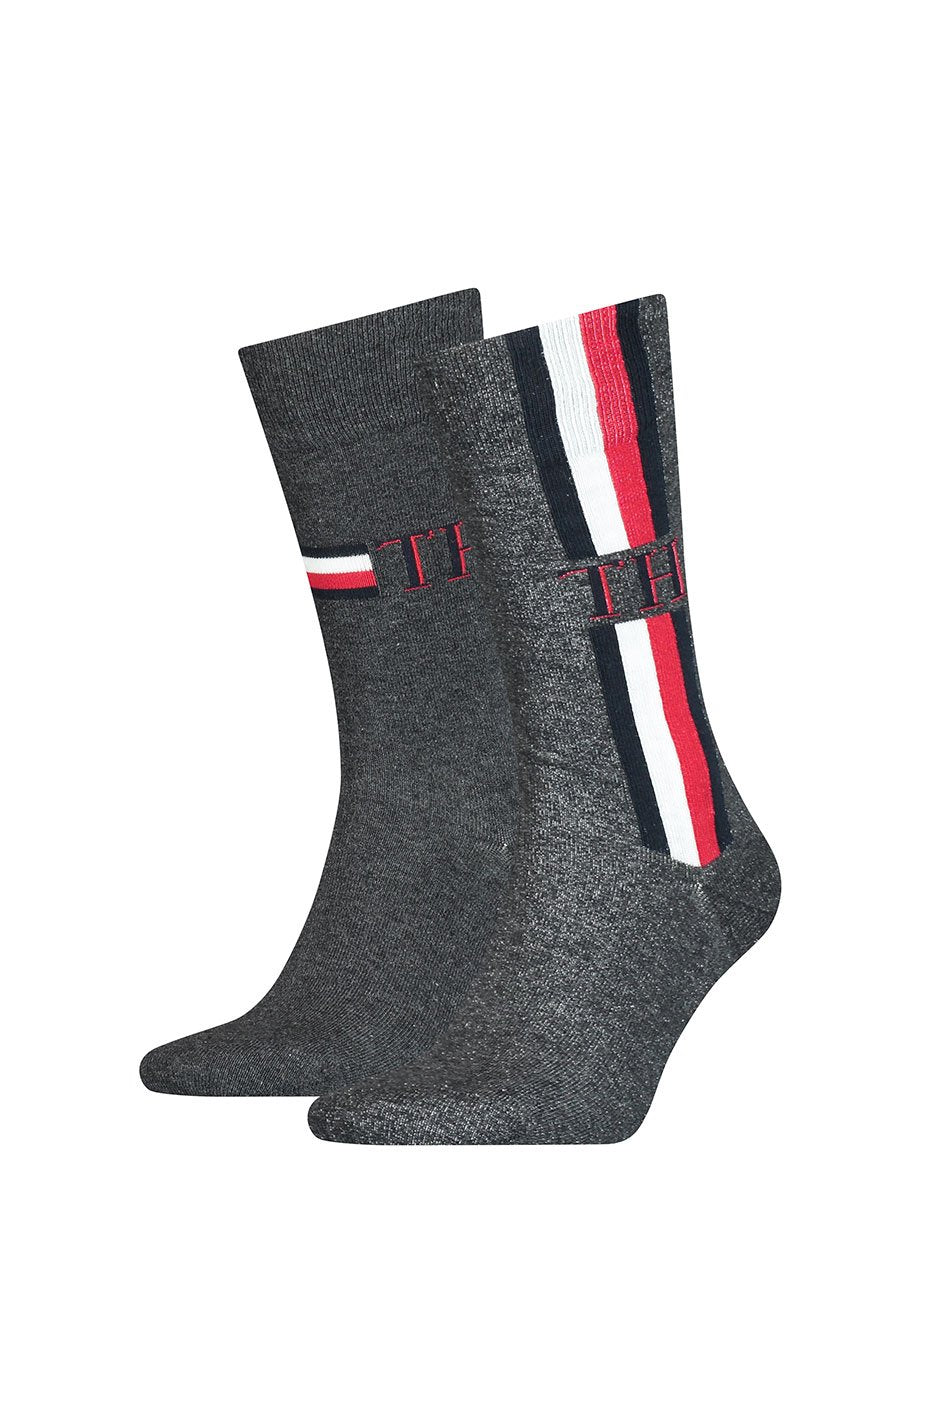 Tommy Hilfiger 2 Pack Men's Iconic Stripe Socks